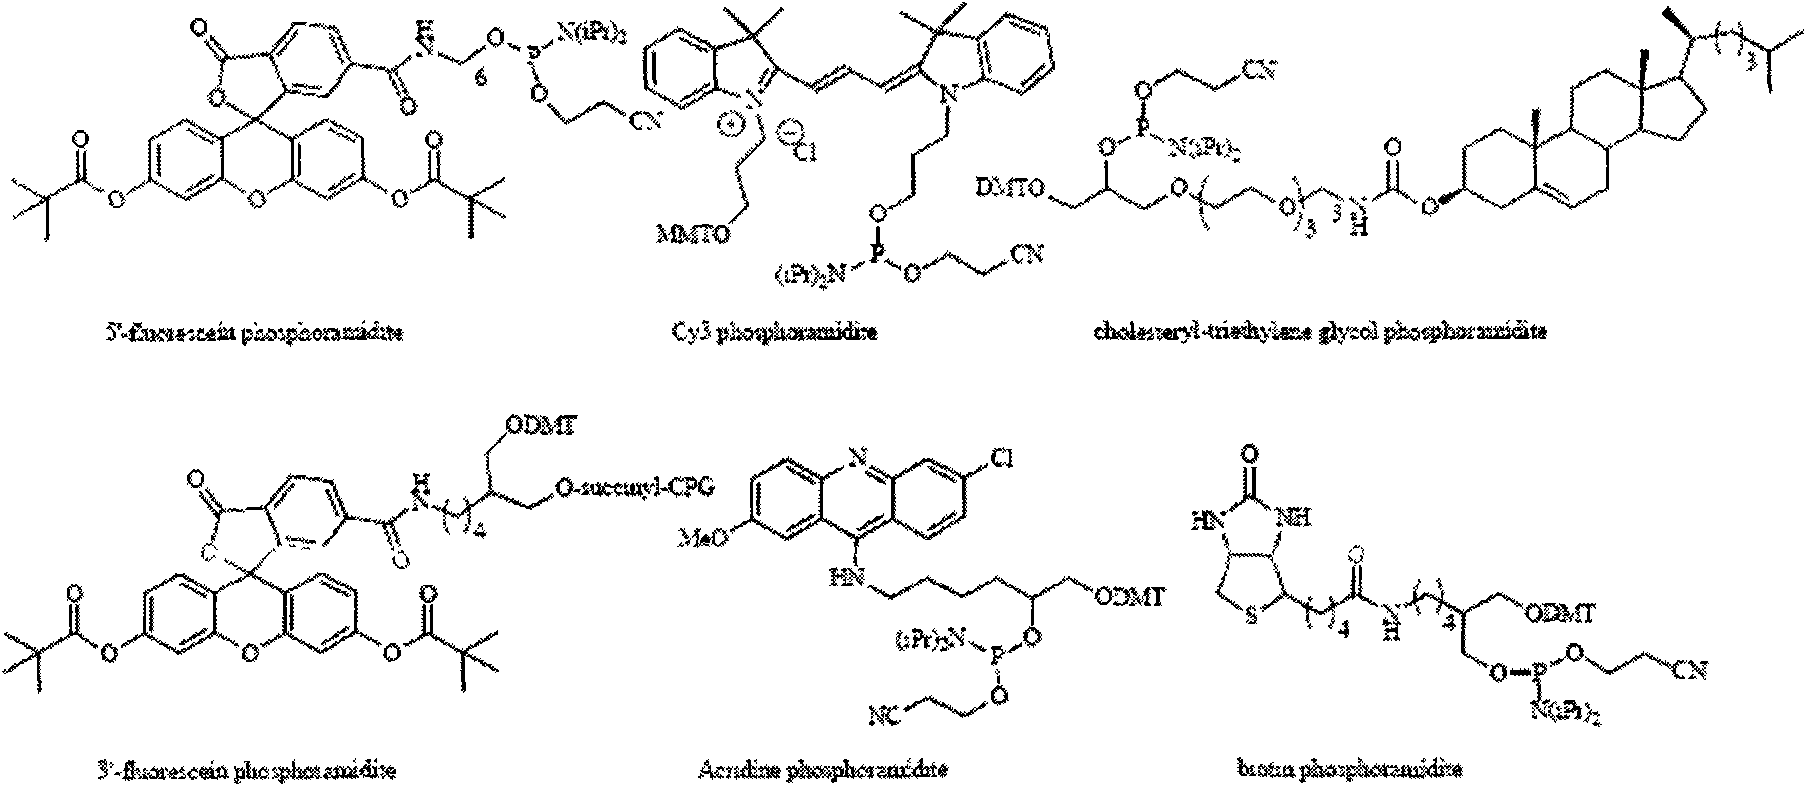 Kit and method for modifying vitro synthesized RNA